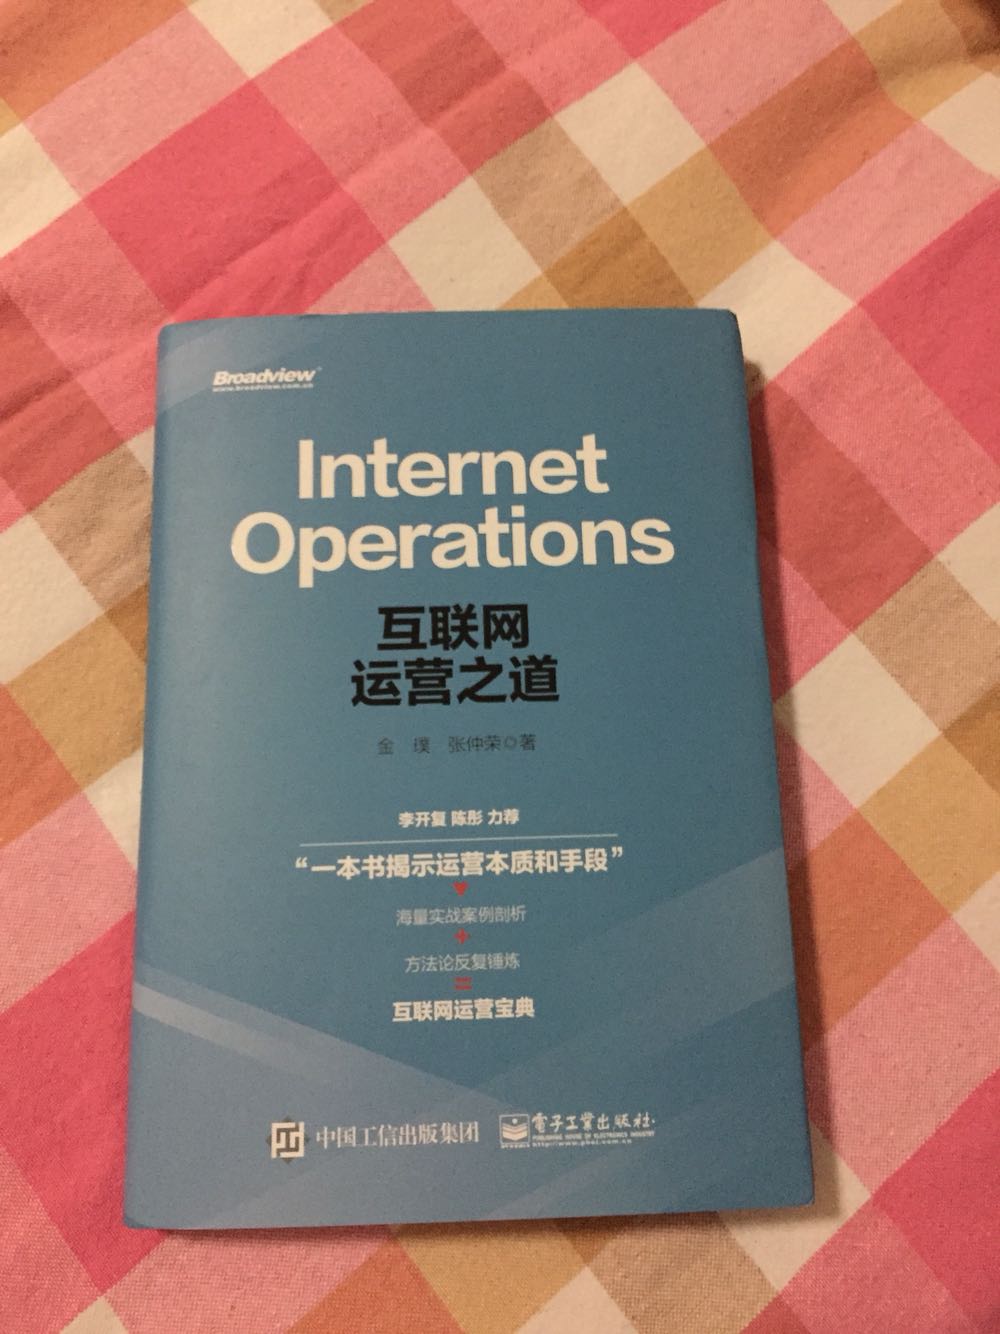 中国好书 感觉还不错 让我迎接一个新的大环境 互联网起来了